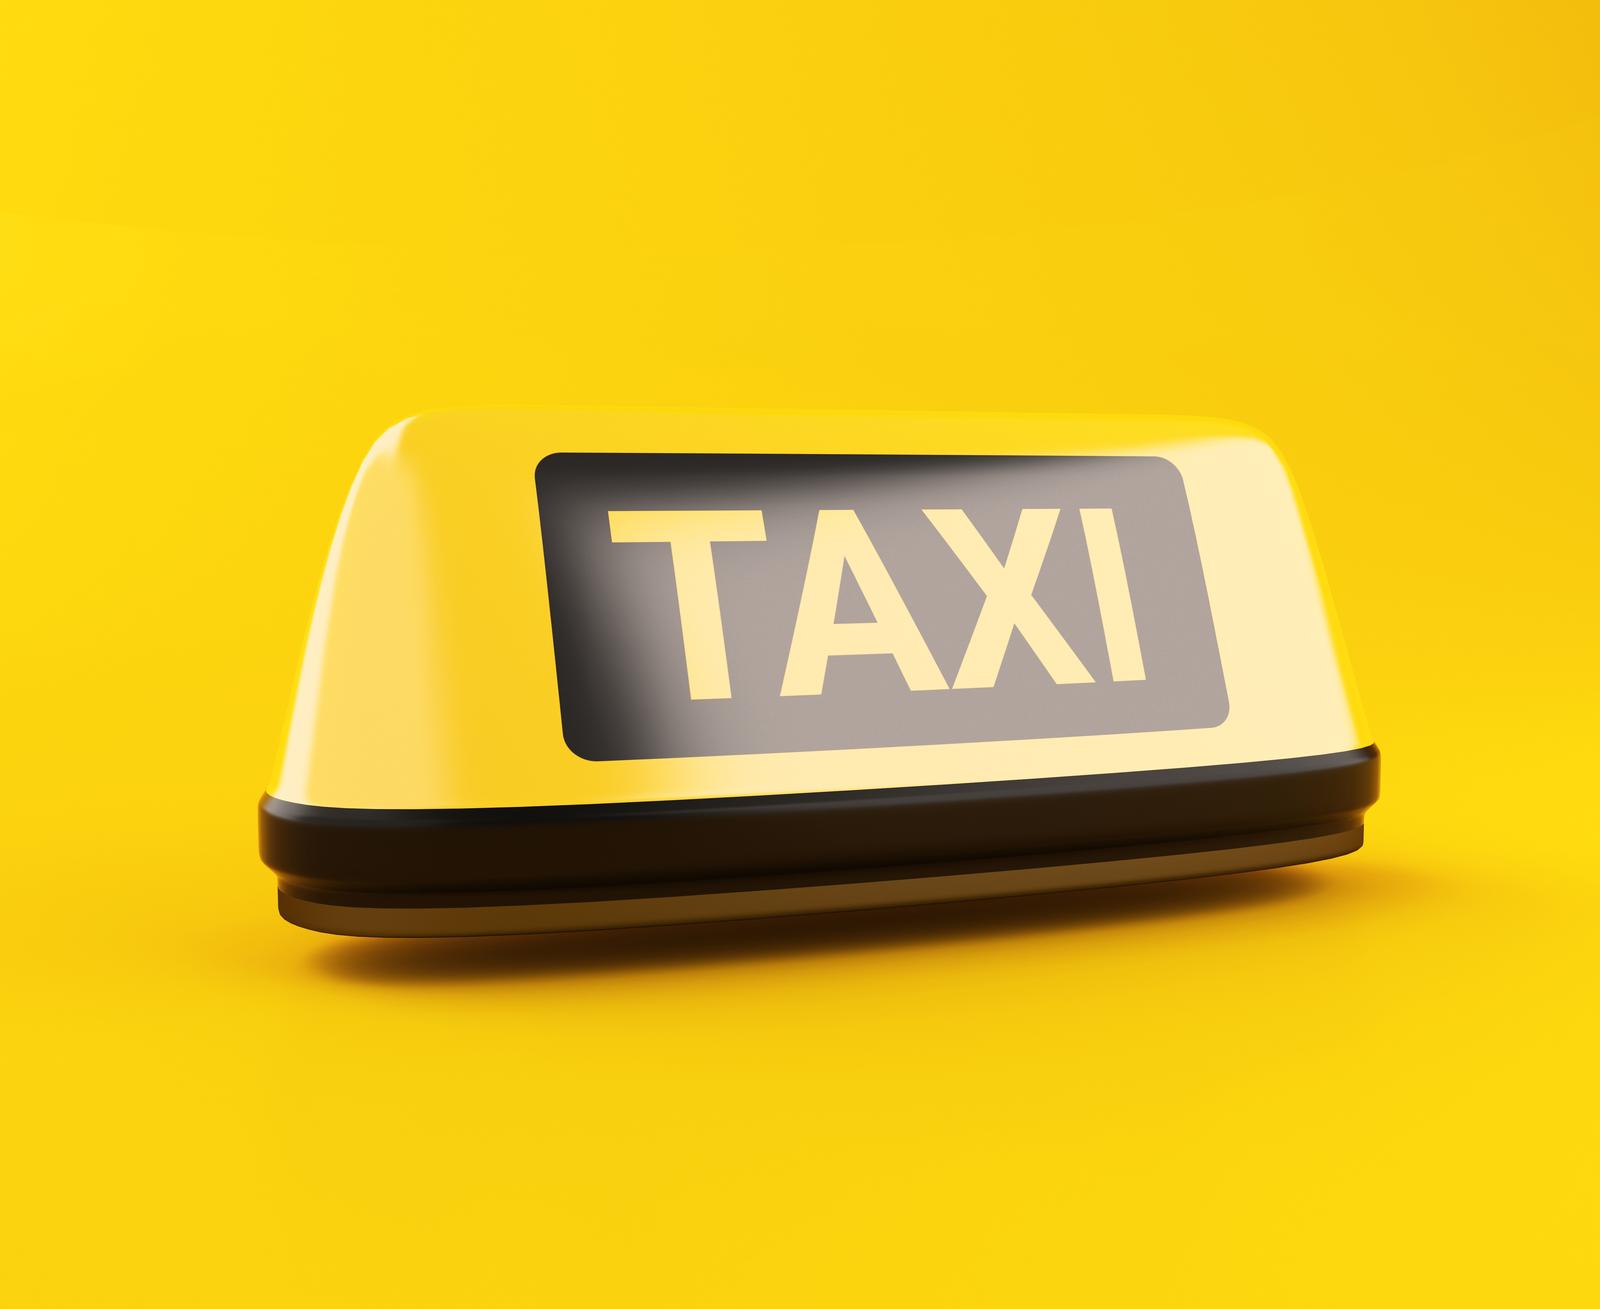 SVETLANA KREMENA FIE - Taxi operation in Tallinn